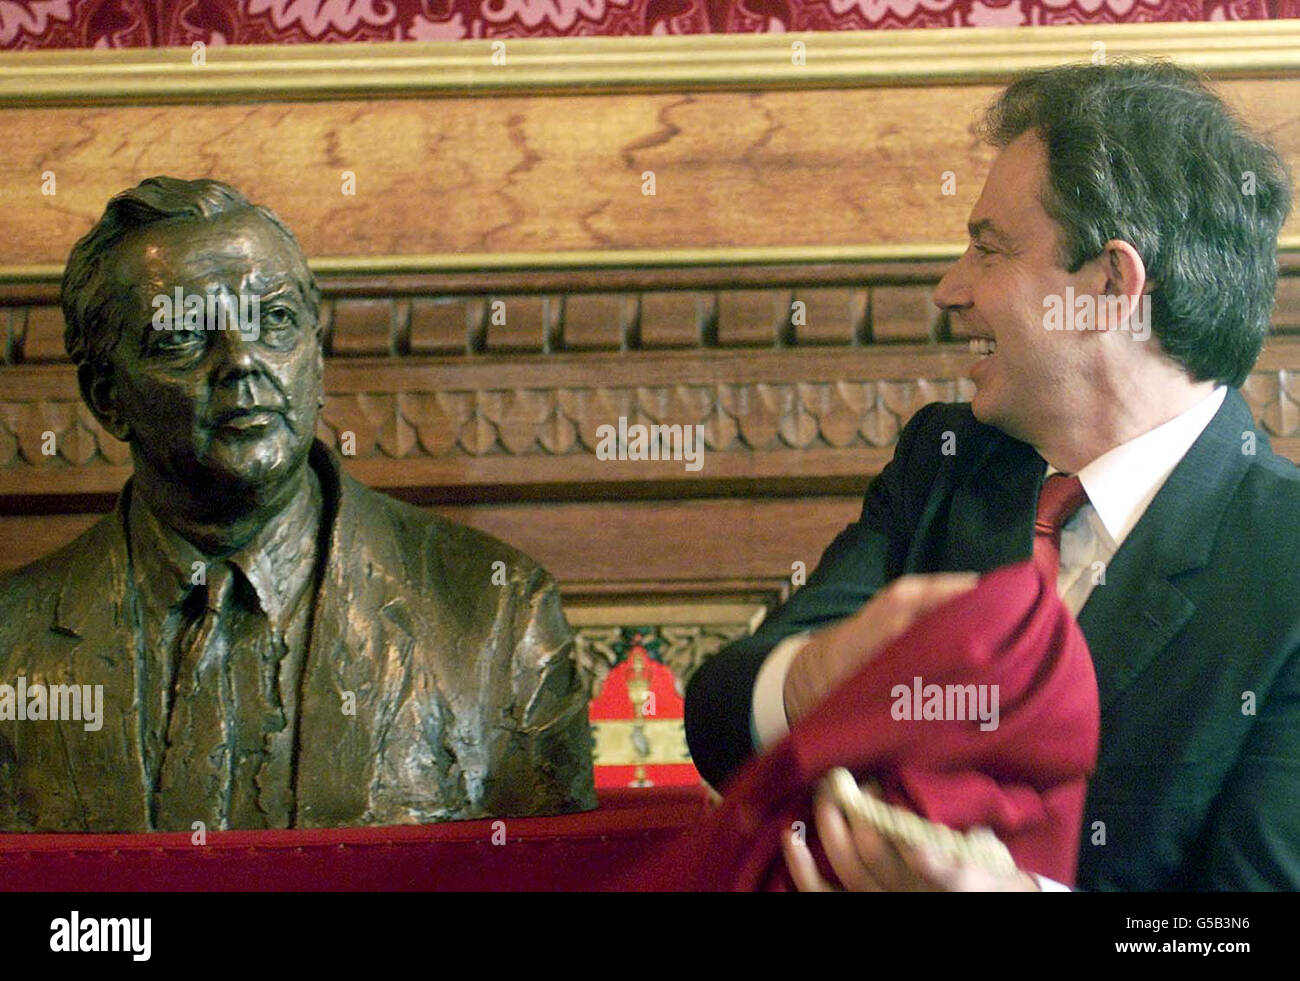 Le Premier ministre britannique Tony Blair dévoile un buste en bronze de Lord Wilson de Rievaulx, le premier ministre travailliste le plus longtemps en service, à la Chambre des communes de Londres, lors d'une cérémonie à laquelle assisteront Lady Wilson et d'autres membres de la famille de feu premier ministre.*Harold Wilson, qui, à 31 ans, est devenu le plus jeune ministre du Cabinet depuis Pitt, est décédé en 1995, à l'âge de 79 ans.La sculpture prendra éventuellement sa place à côté des apparences d'autres premiers ministres du XXe siècle dans le lobby des députés de la Chambre des communes. Banque D'Images